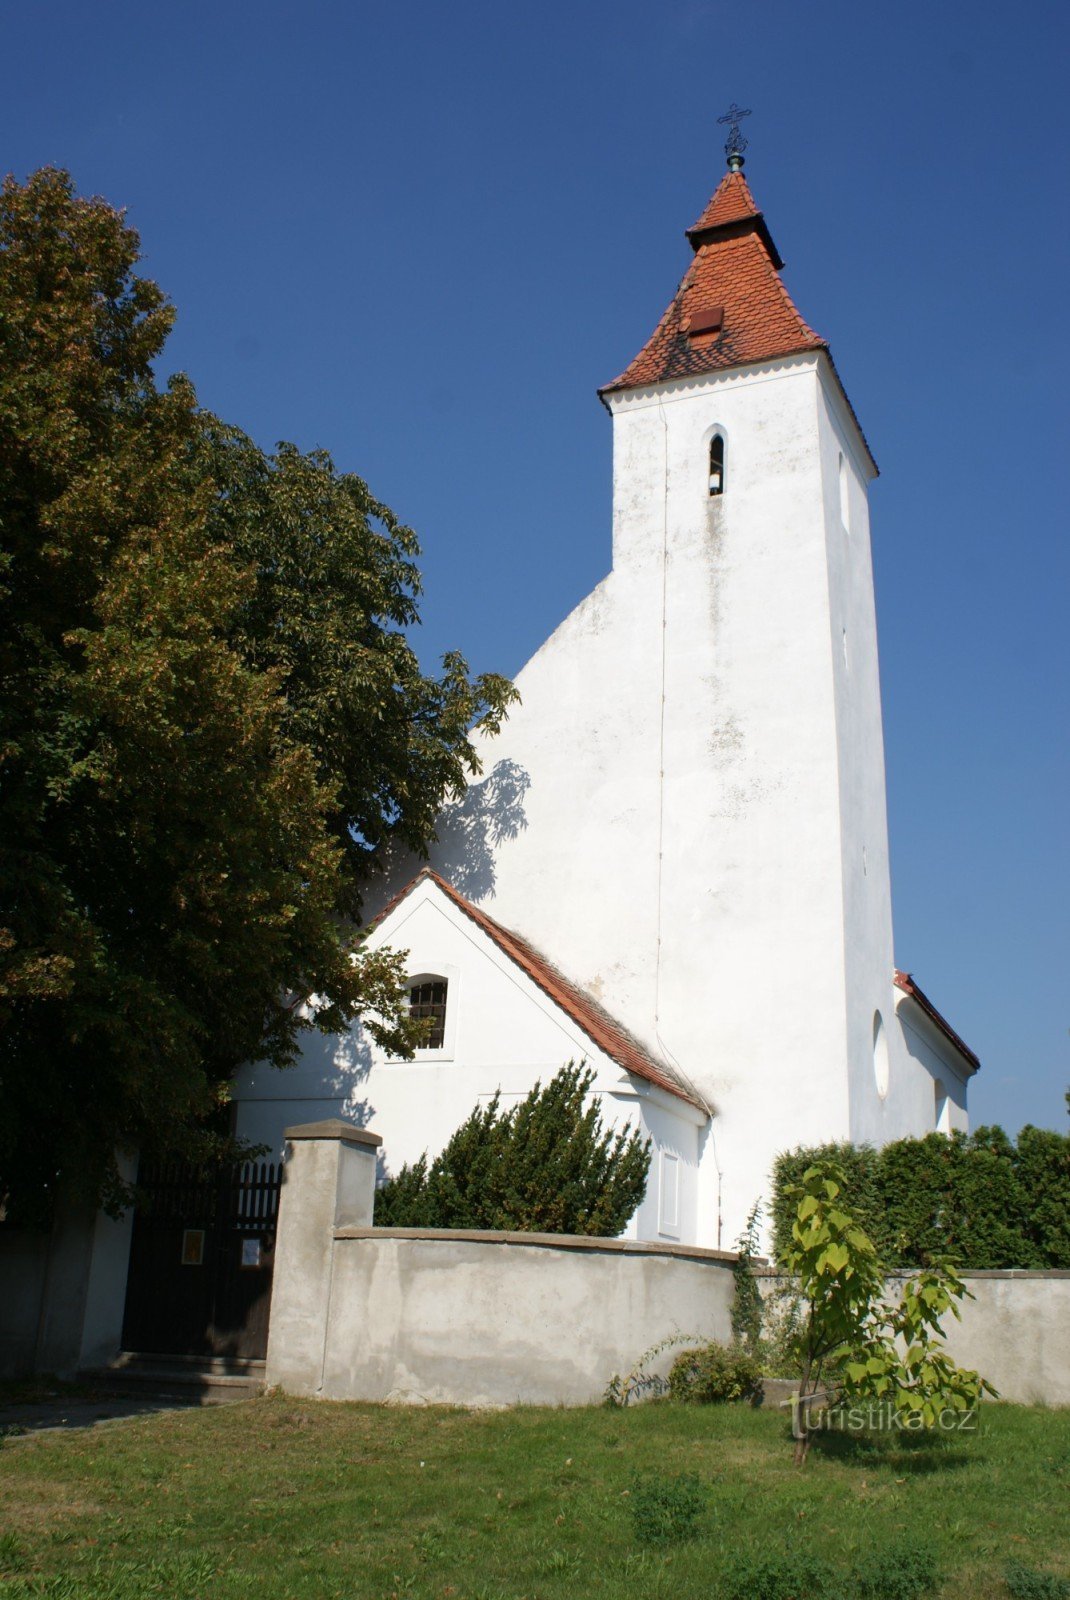 Hovorčovice – Biserica Nașterea Sf. Ioan Botezatorul